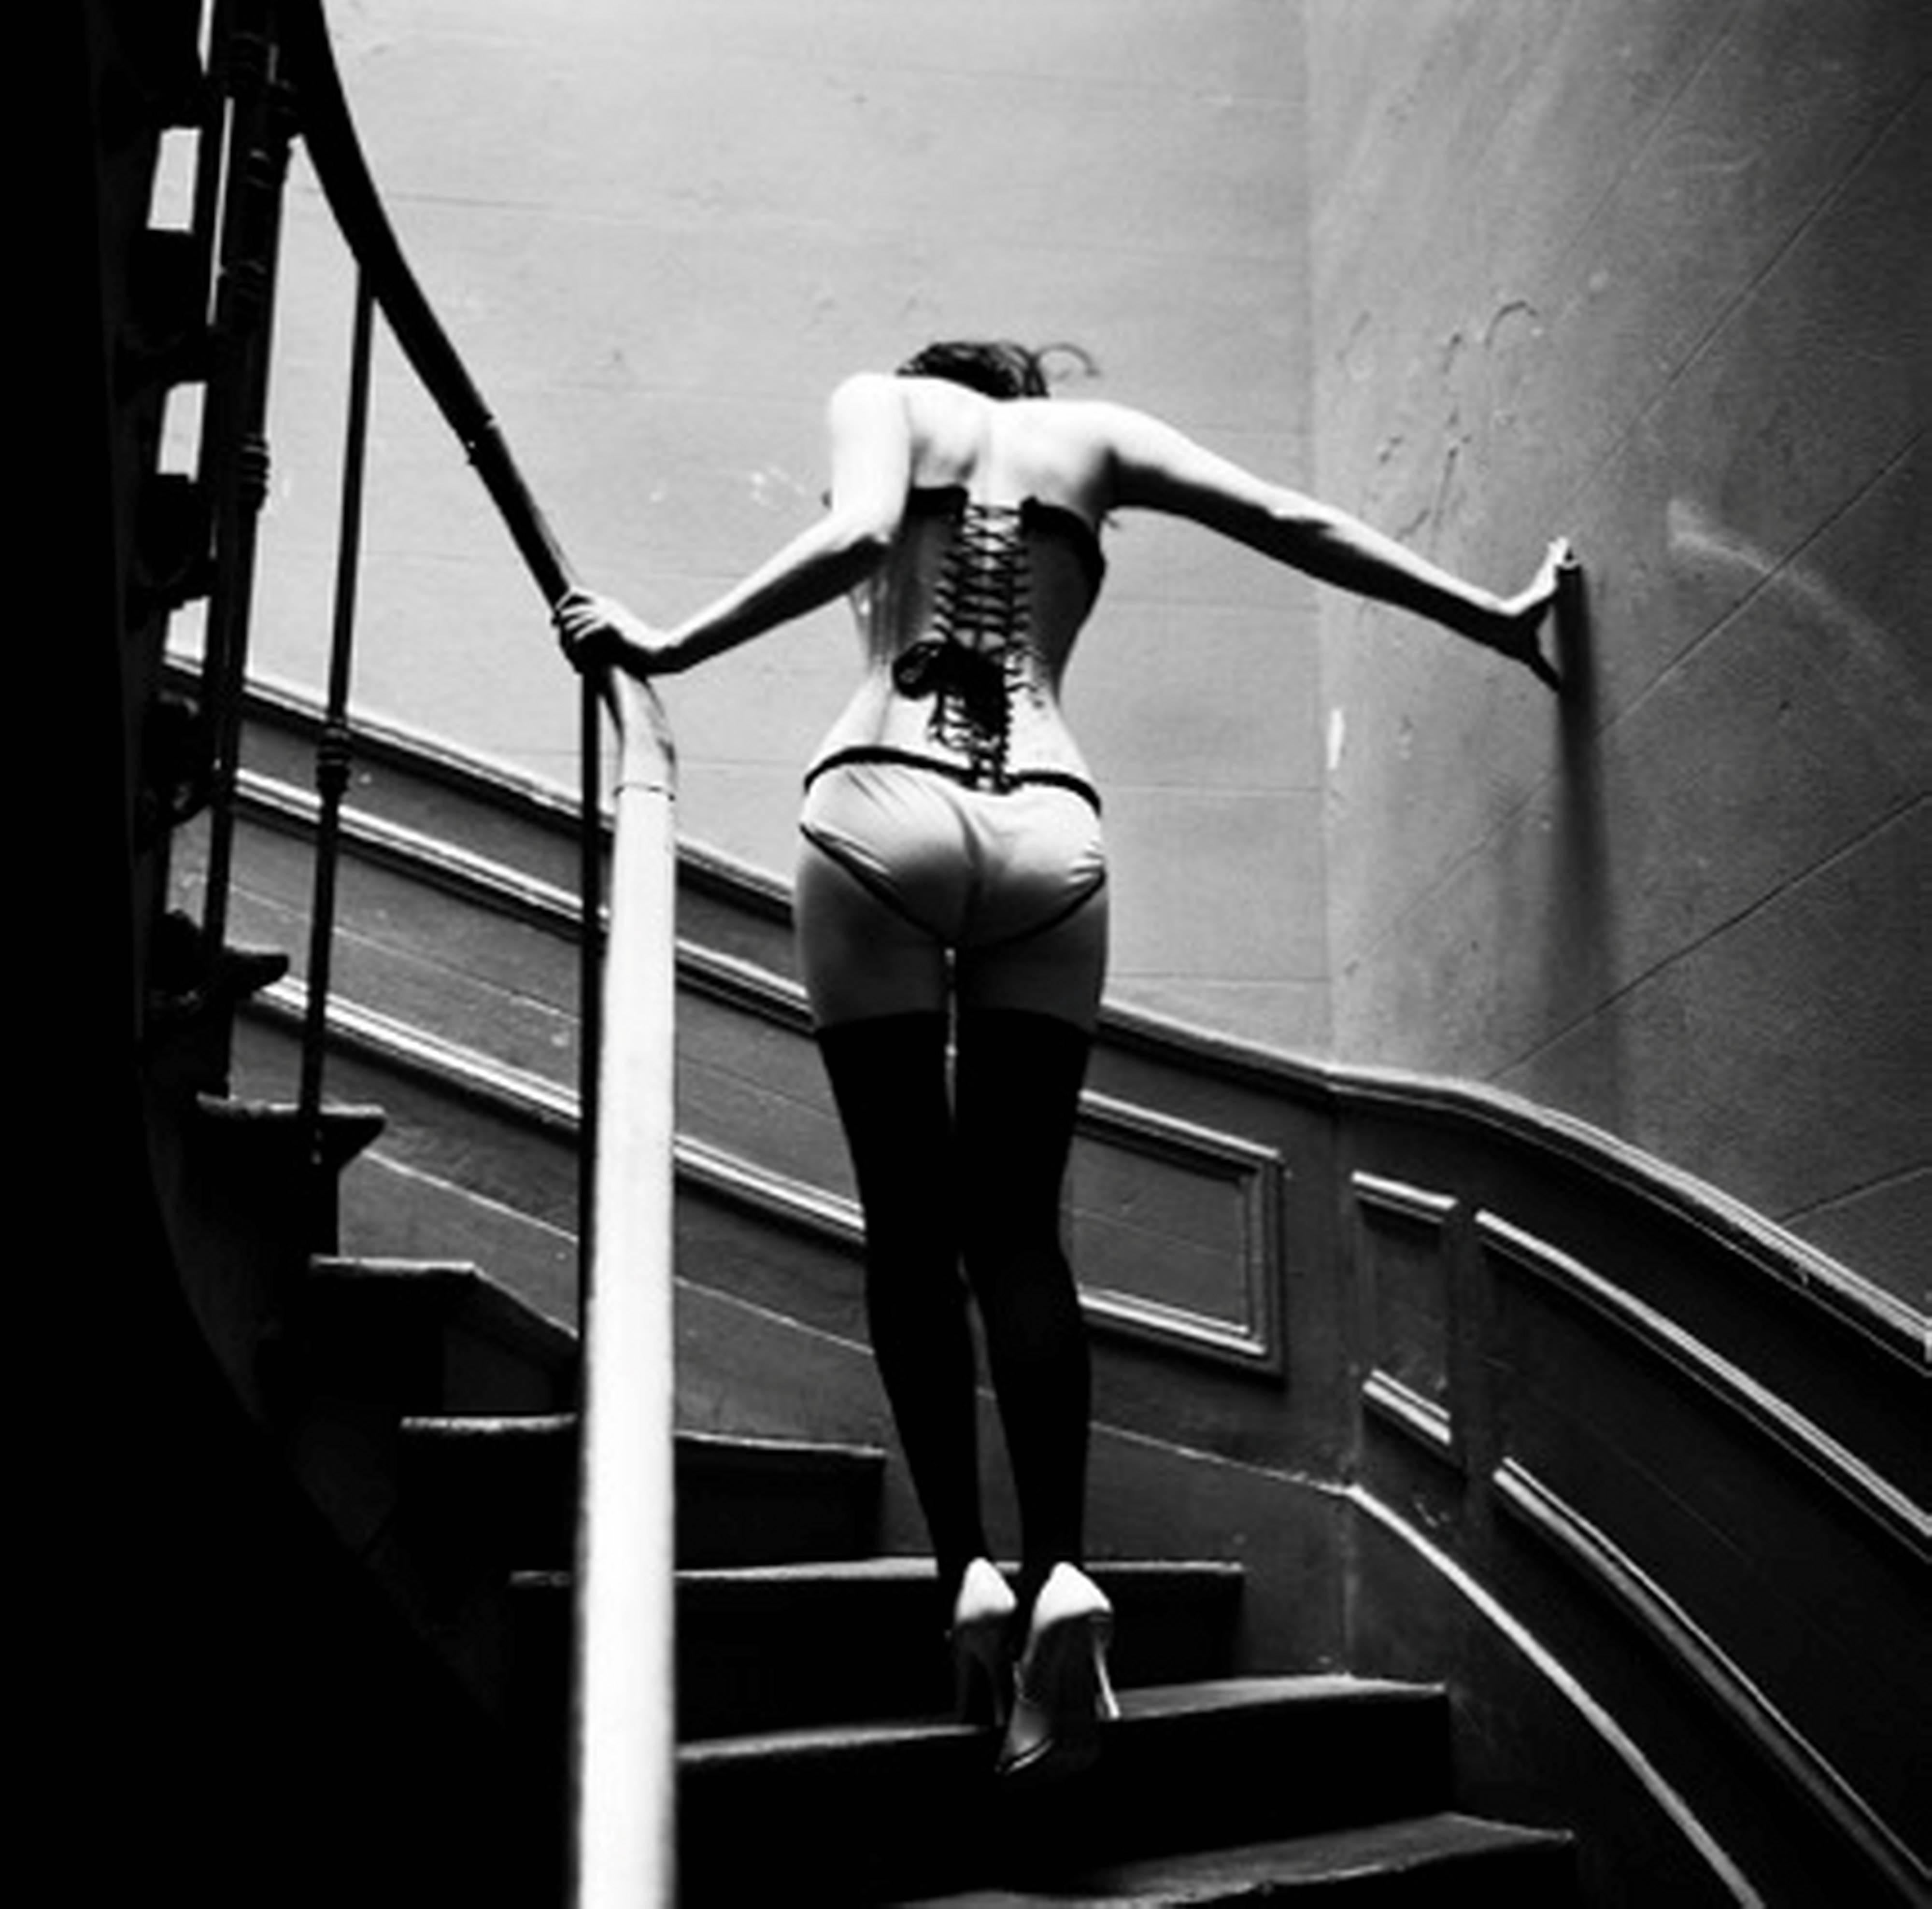 Upstairs, Paris – Modell in der Dessous, beim Gehen up Stairs, Kunstfotografie 1996